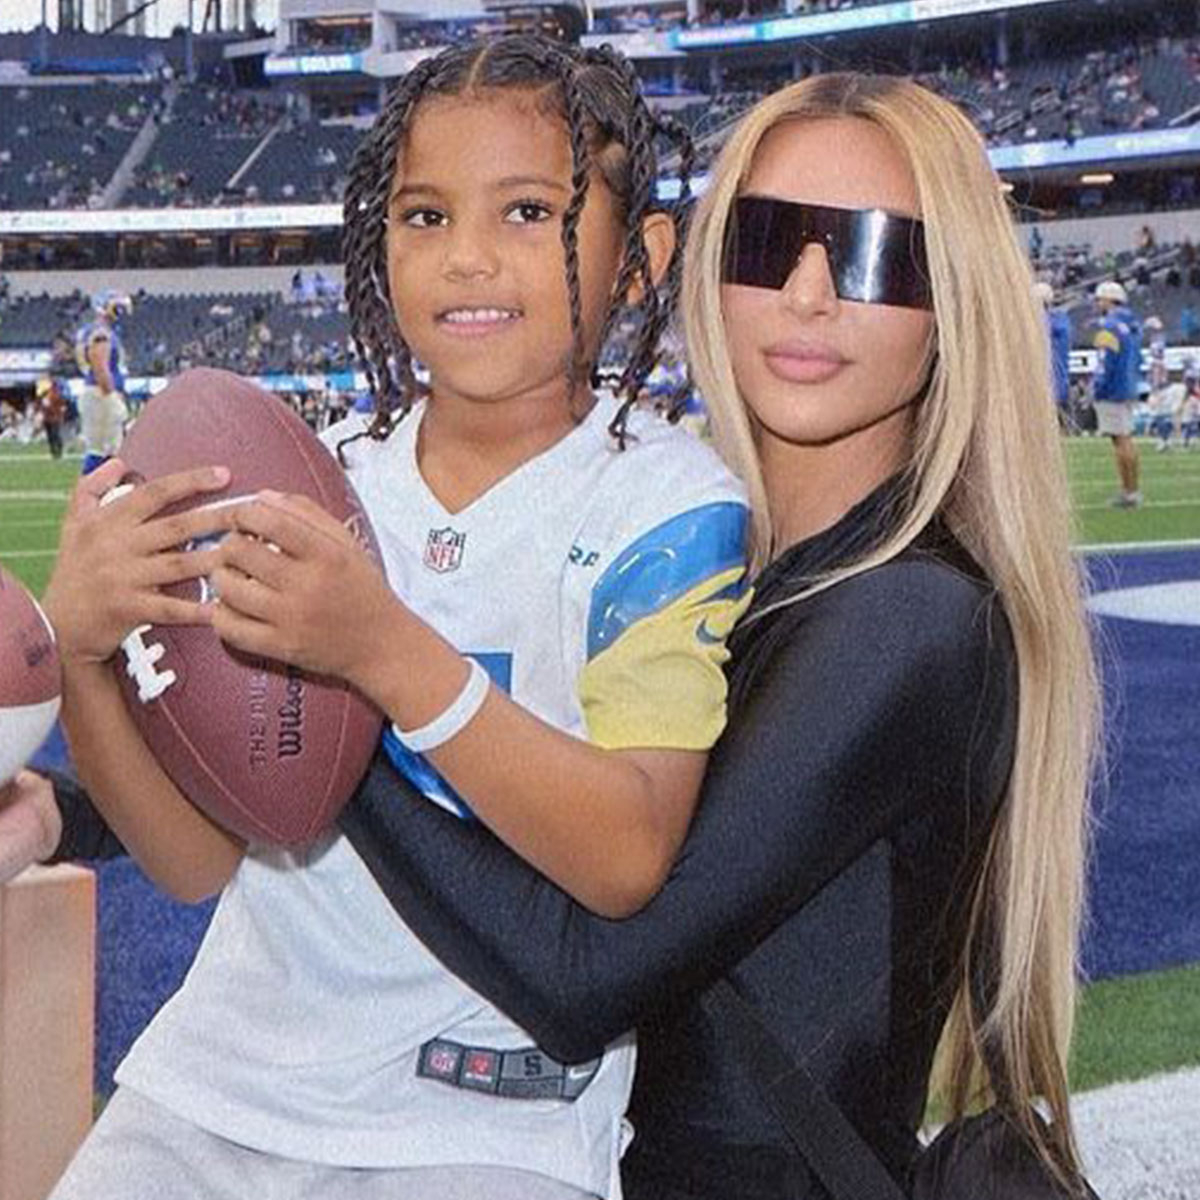 Kim Kardashian Celebrates Saint West's 7th Birthday at Football Game